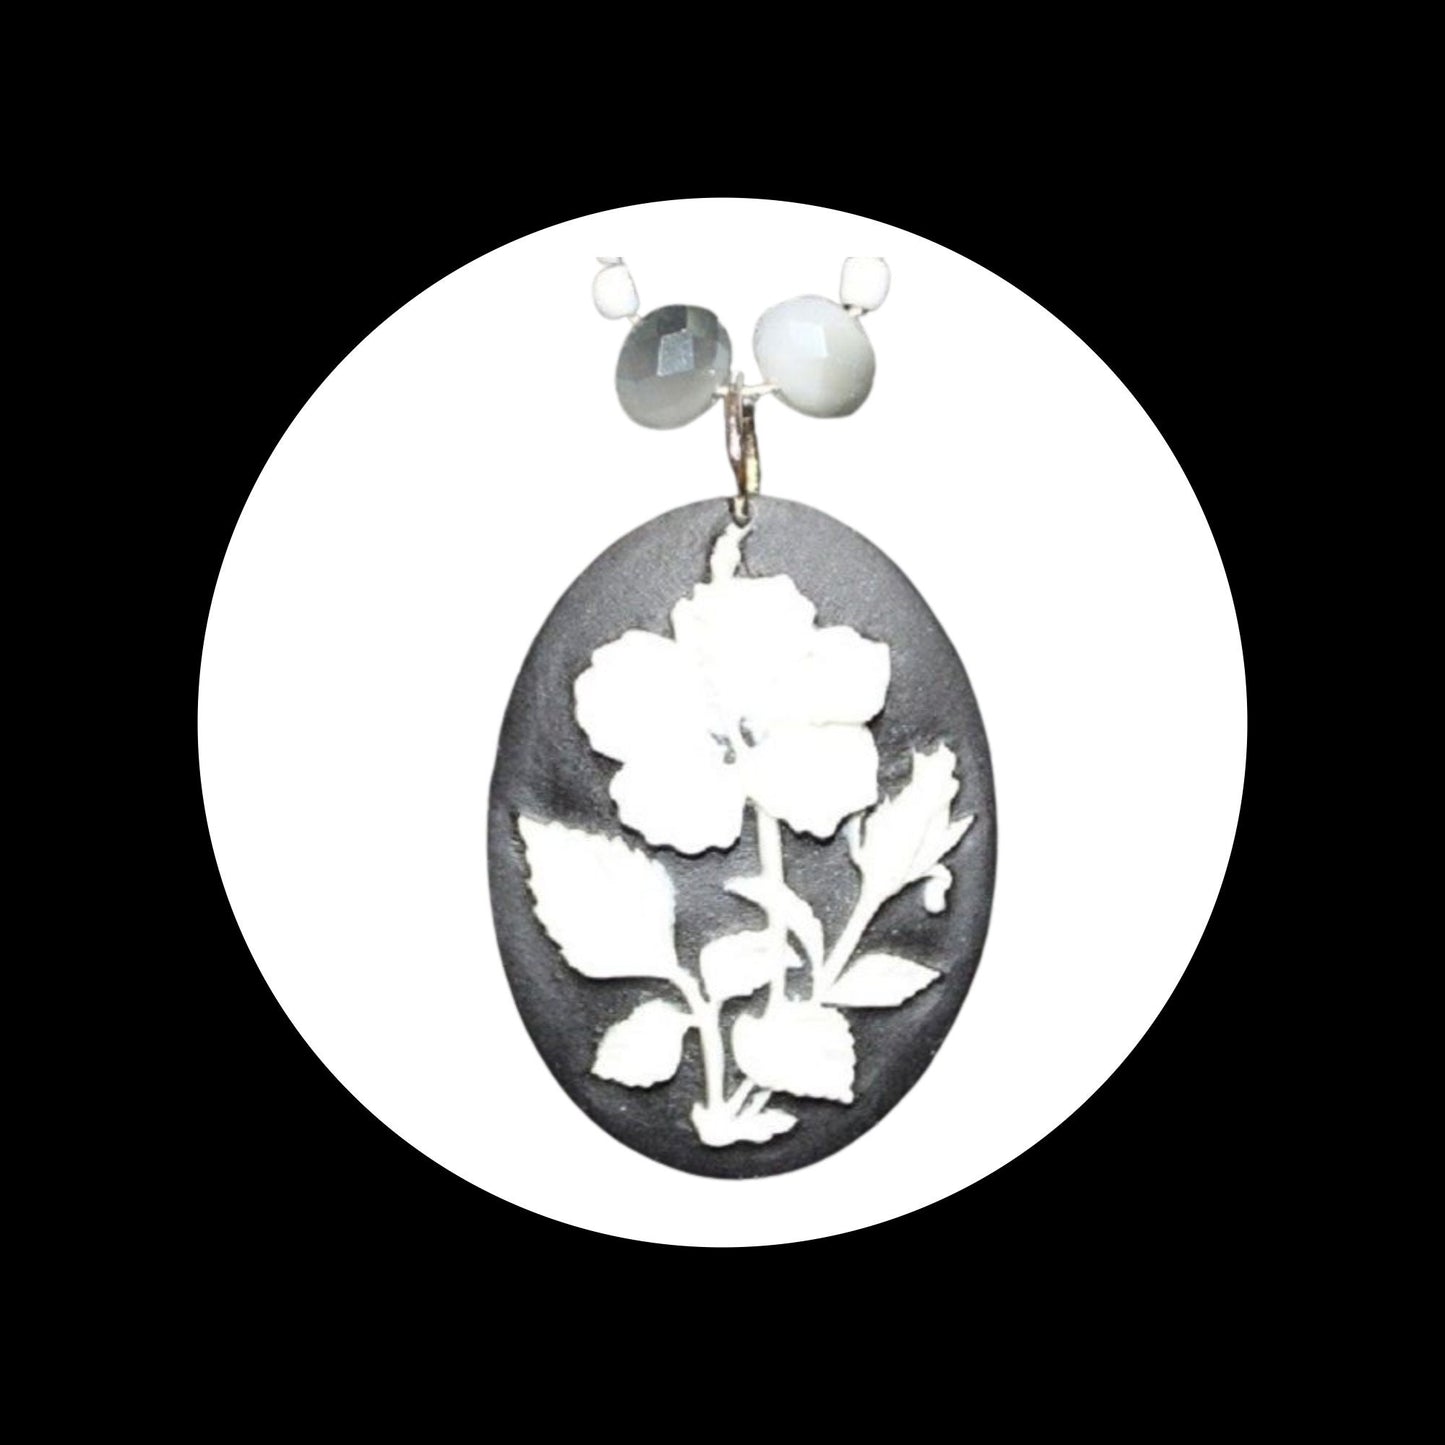 Black & White Flower Pendant Bead Necklace & Earring Set